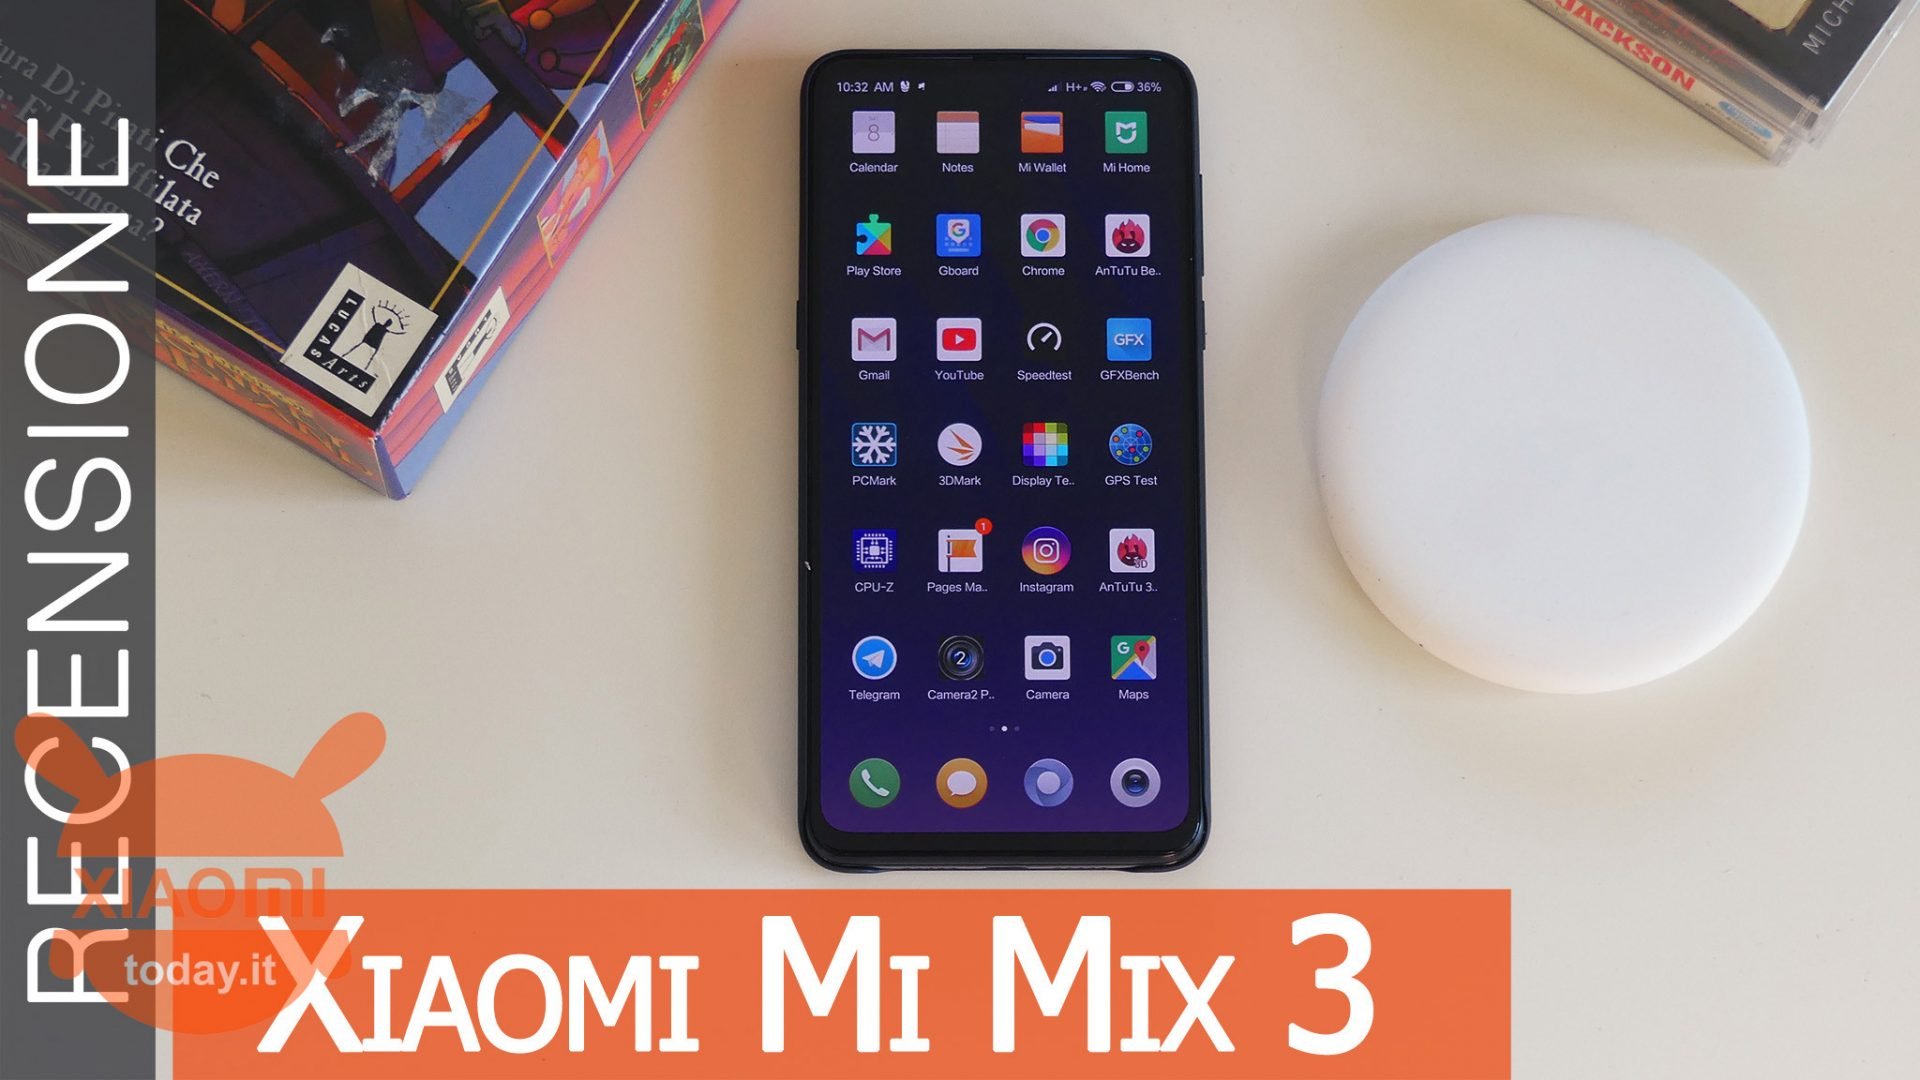 verhouding commando communicatie Xiaomi Mi Mix 3 Review - Top or Flop?